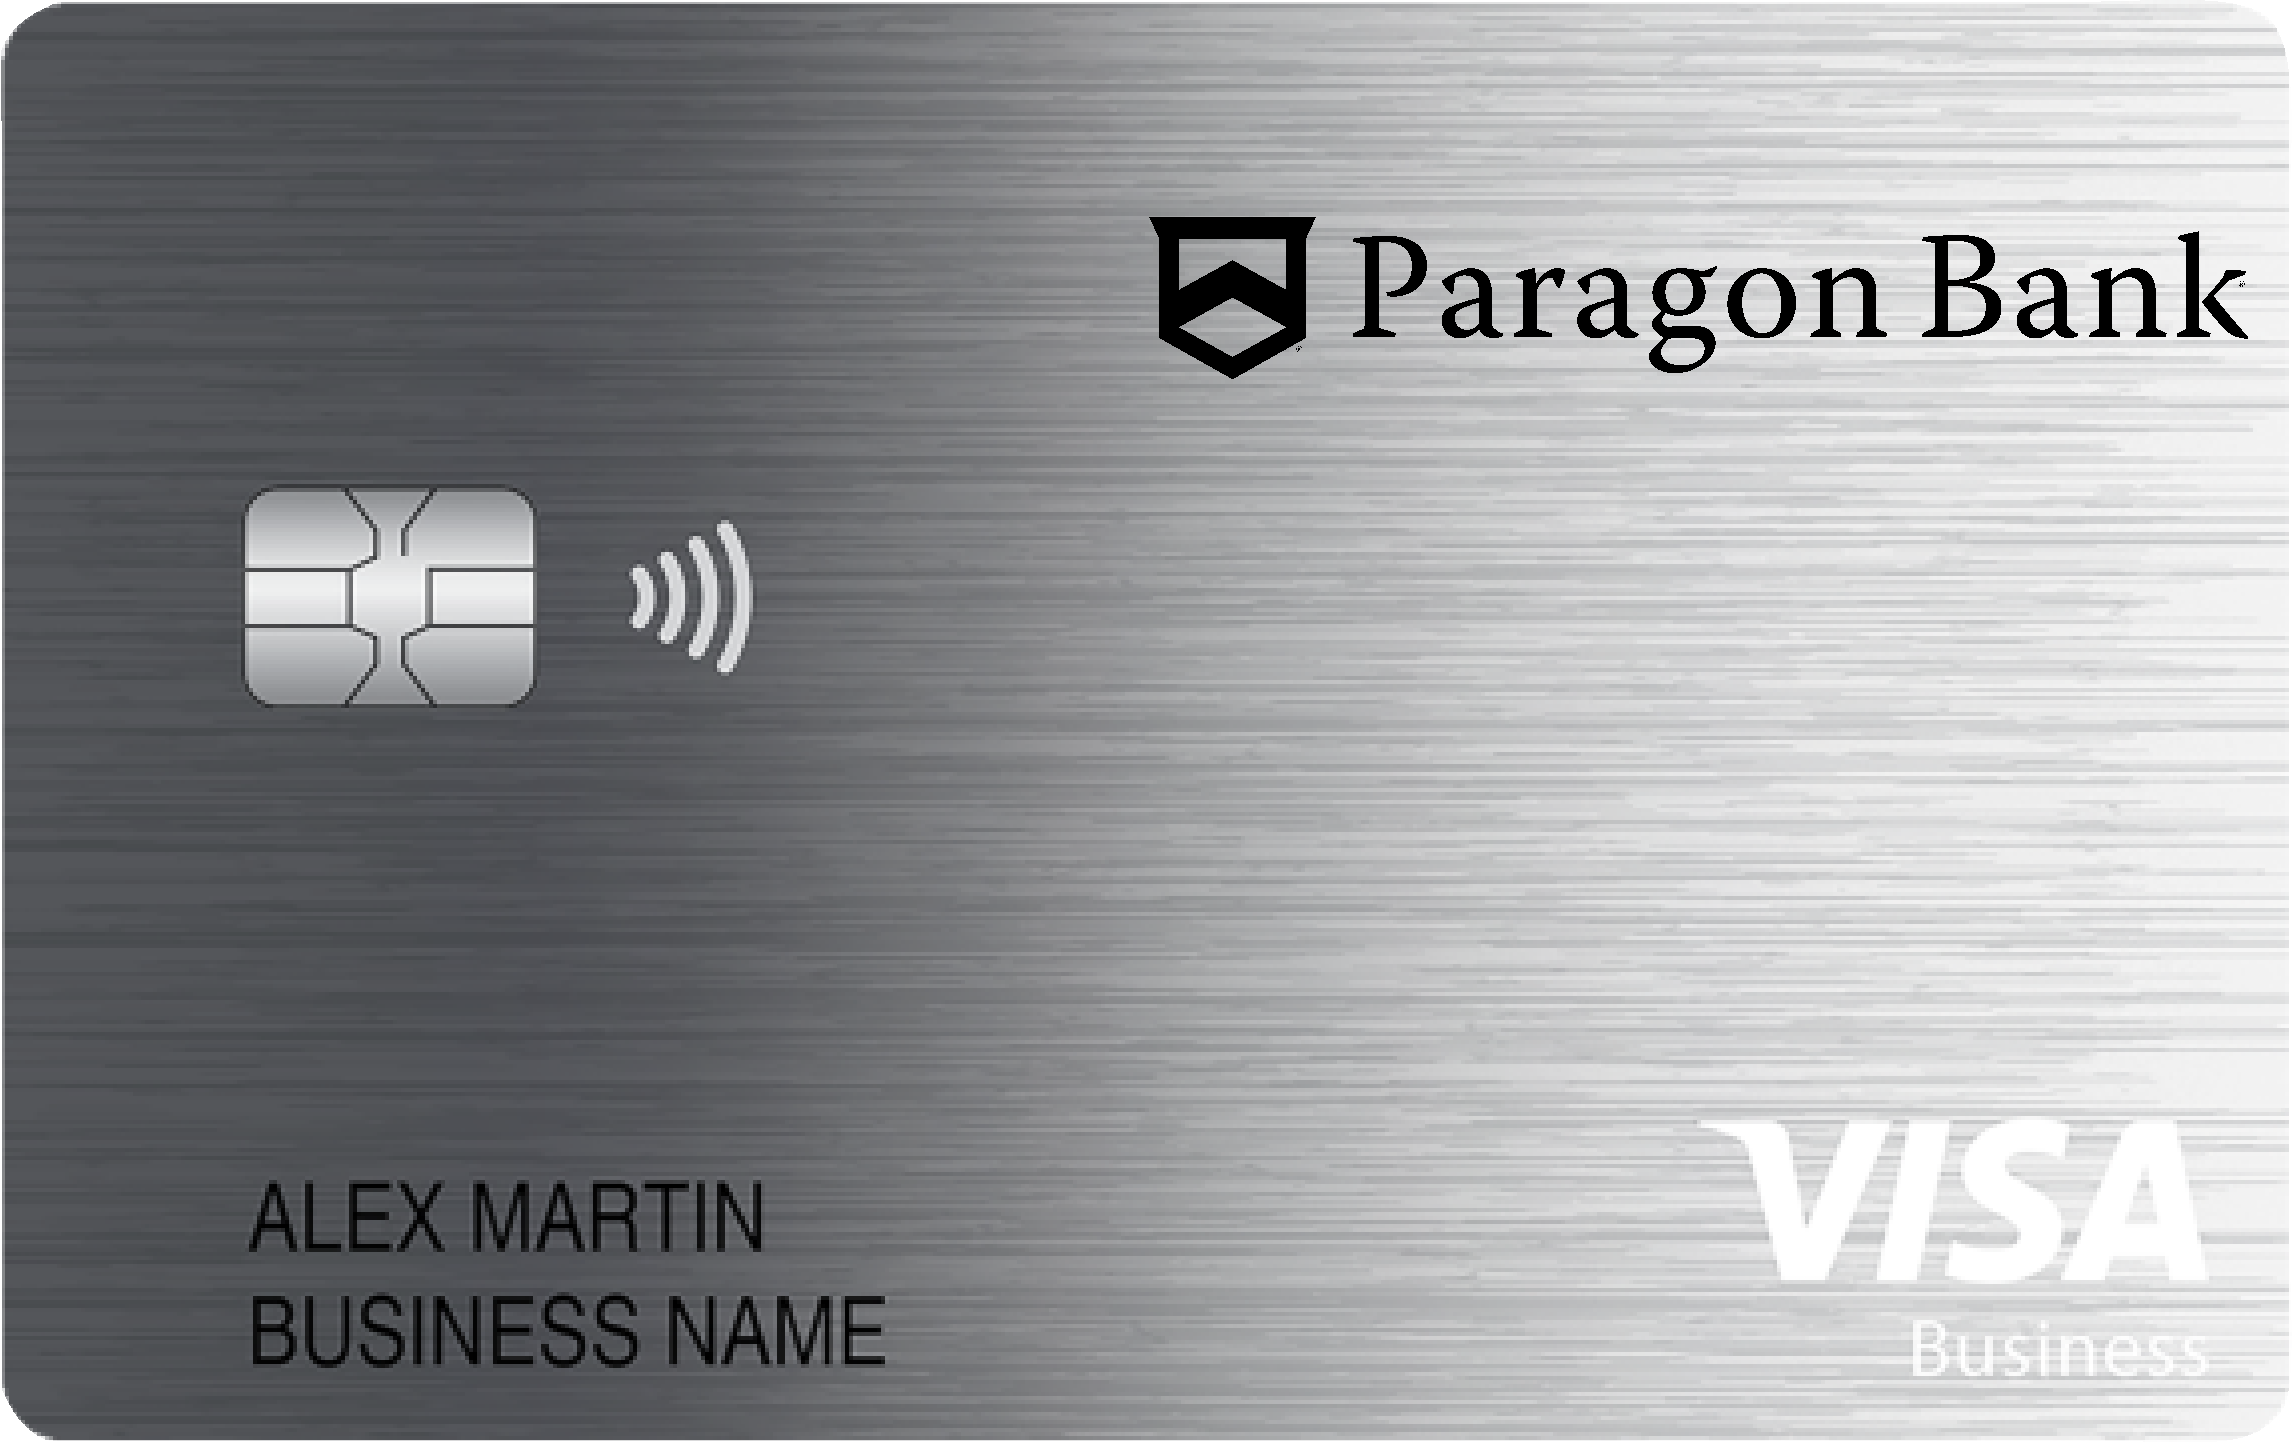 Paragon Bank Business Card Card